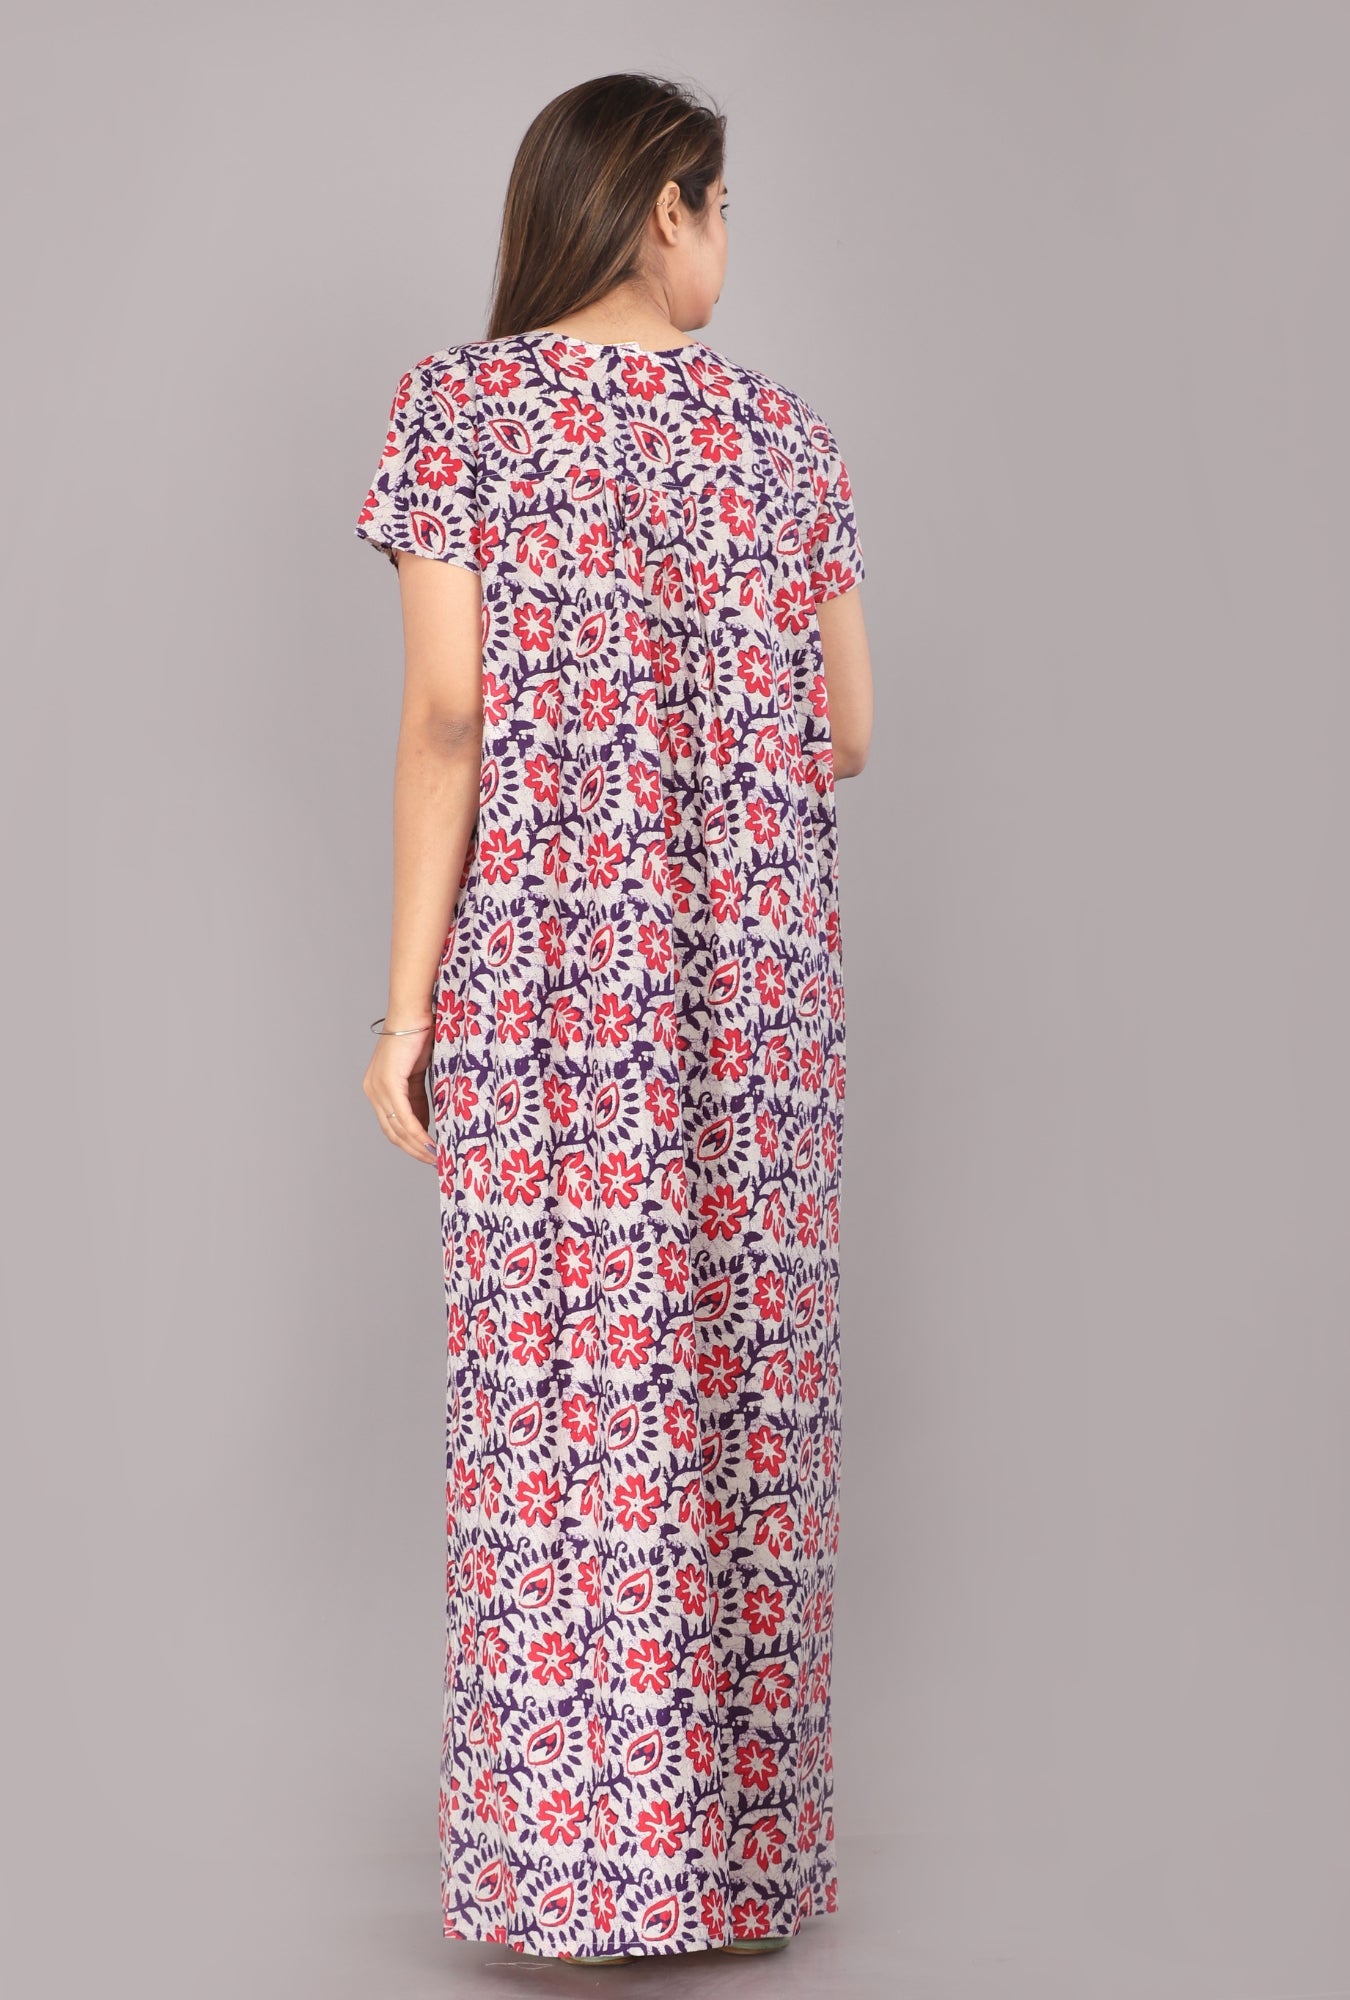 Batik Flower Purple Cotton Printed Nightwear Gowns